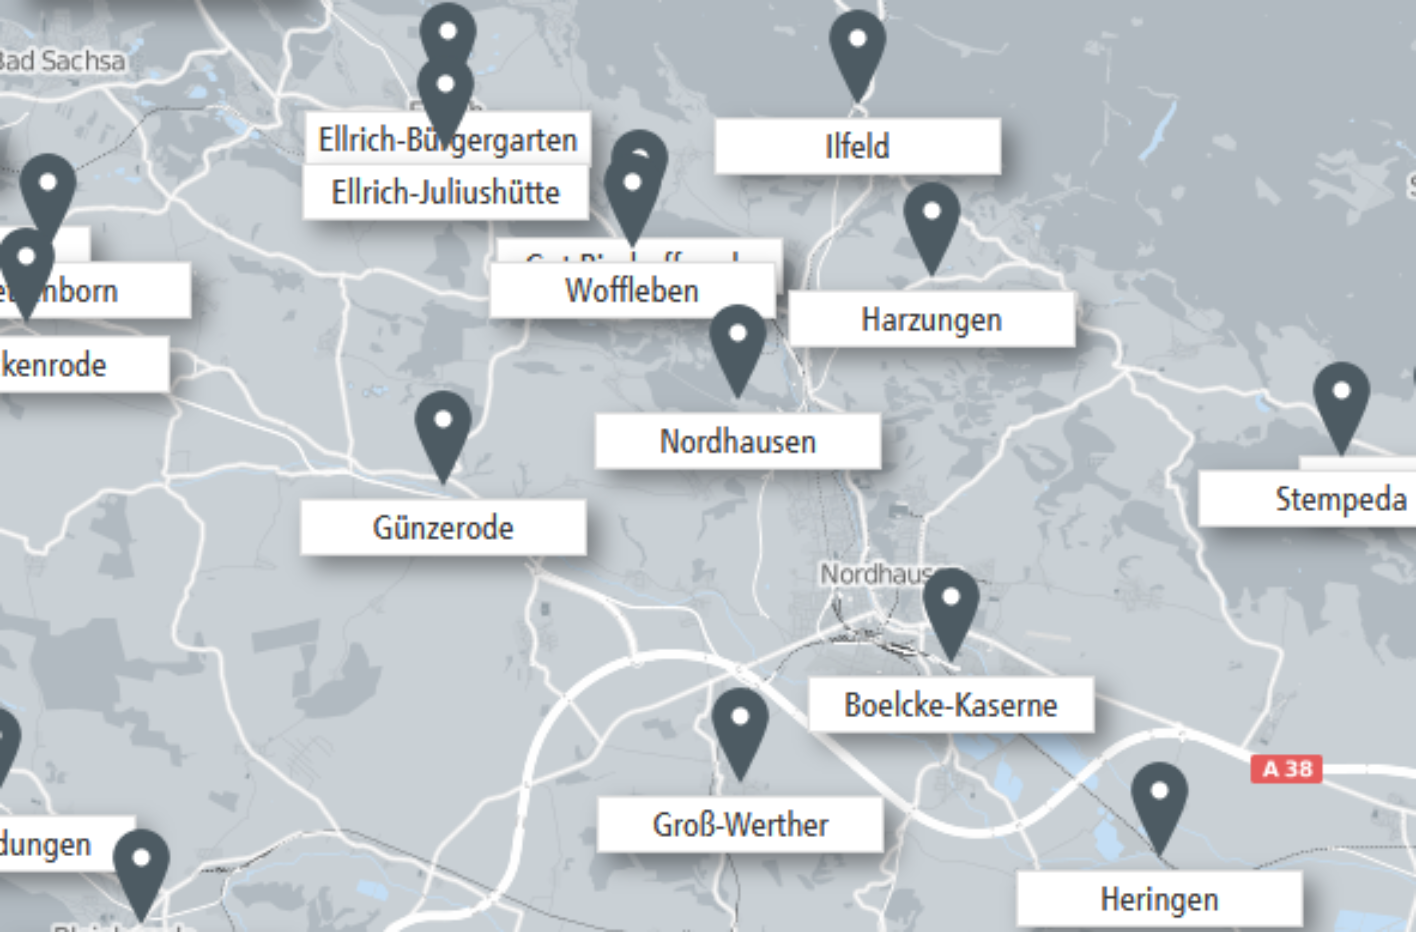 Ein Ausschnitt aus einer Karte der Umgebung Nordhausens in Thüringen. Mehrere Standorte sind markiert.